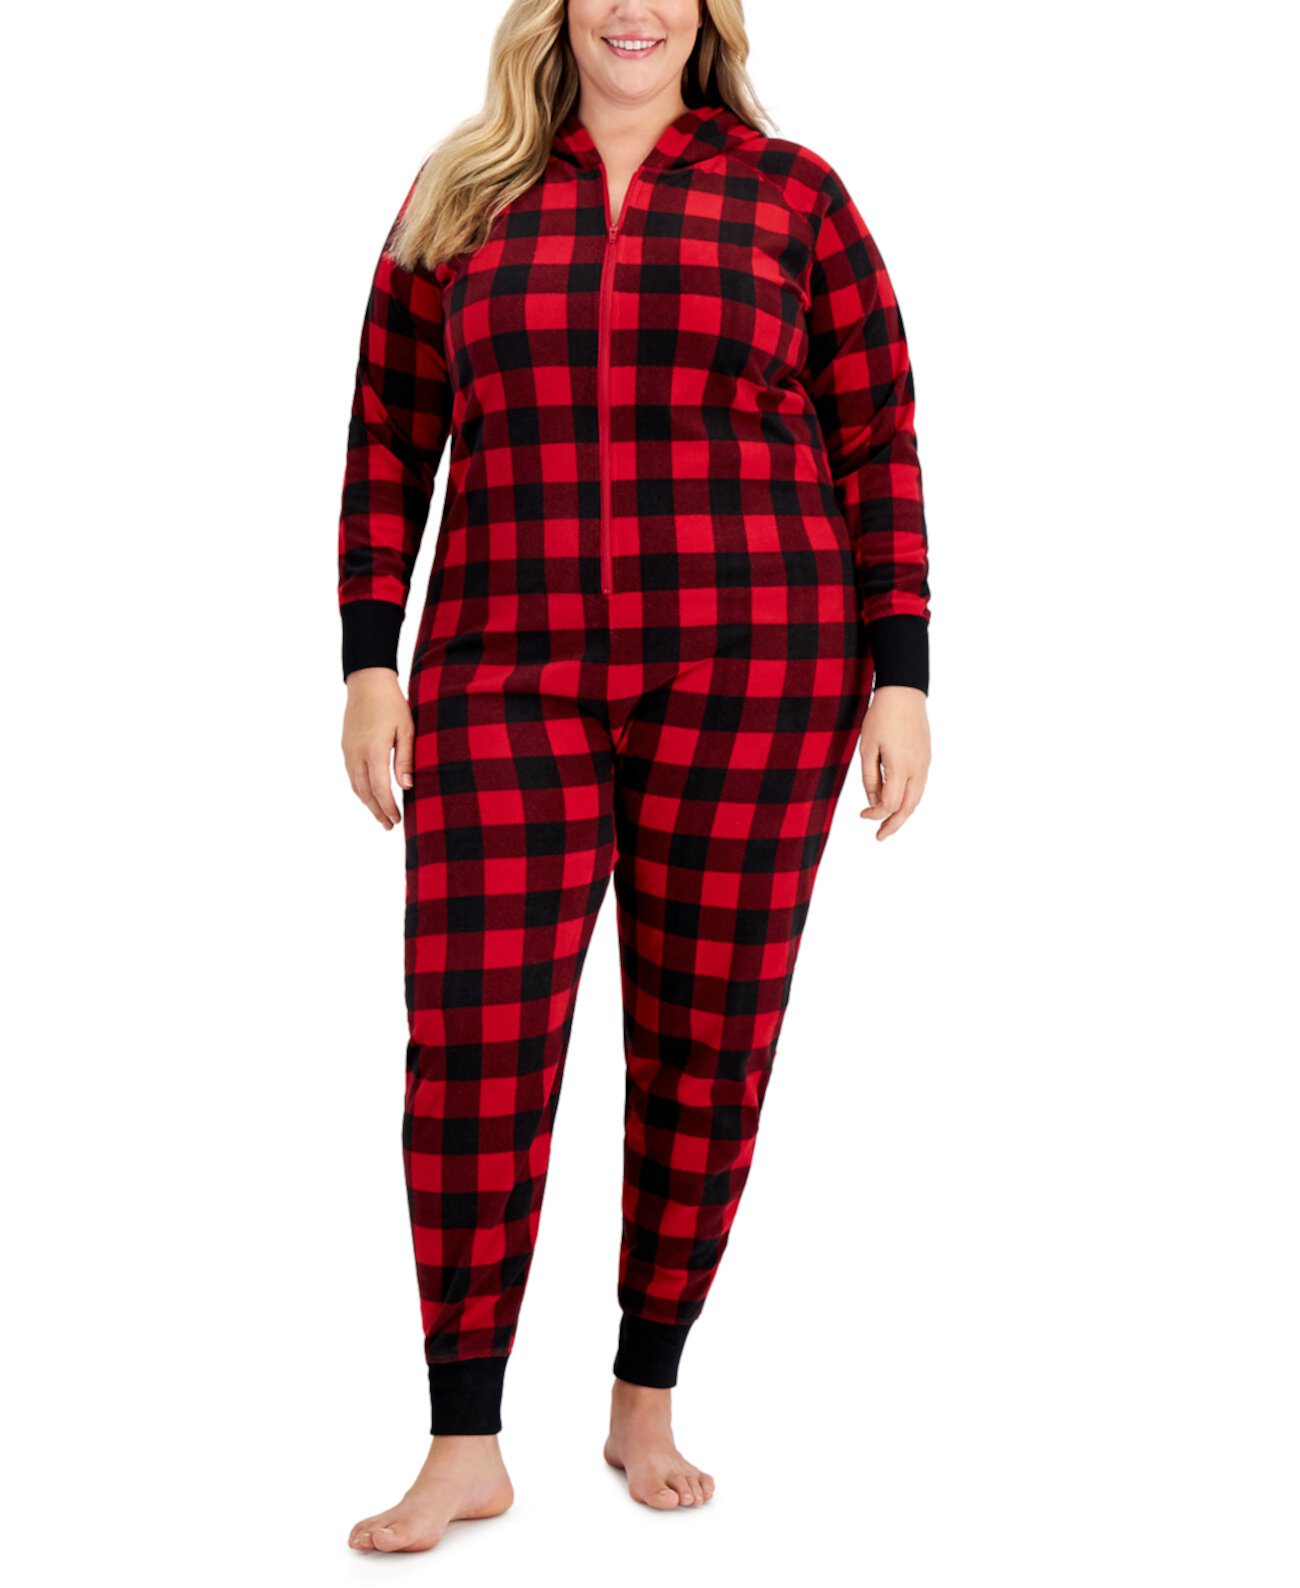 Matching Women's Plus Size 1-Pc. Красная семейная пижама в клетку с принтом Family Pajamas